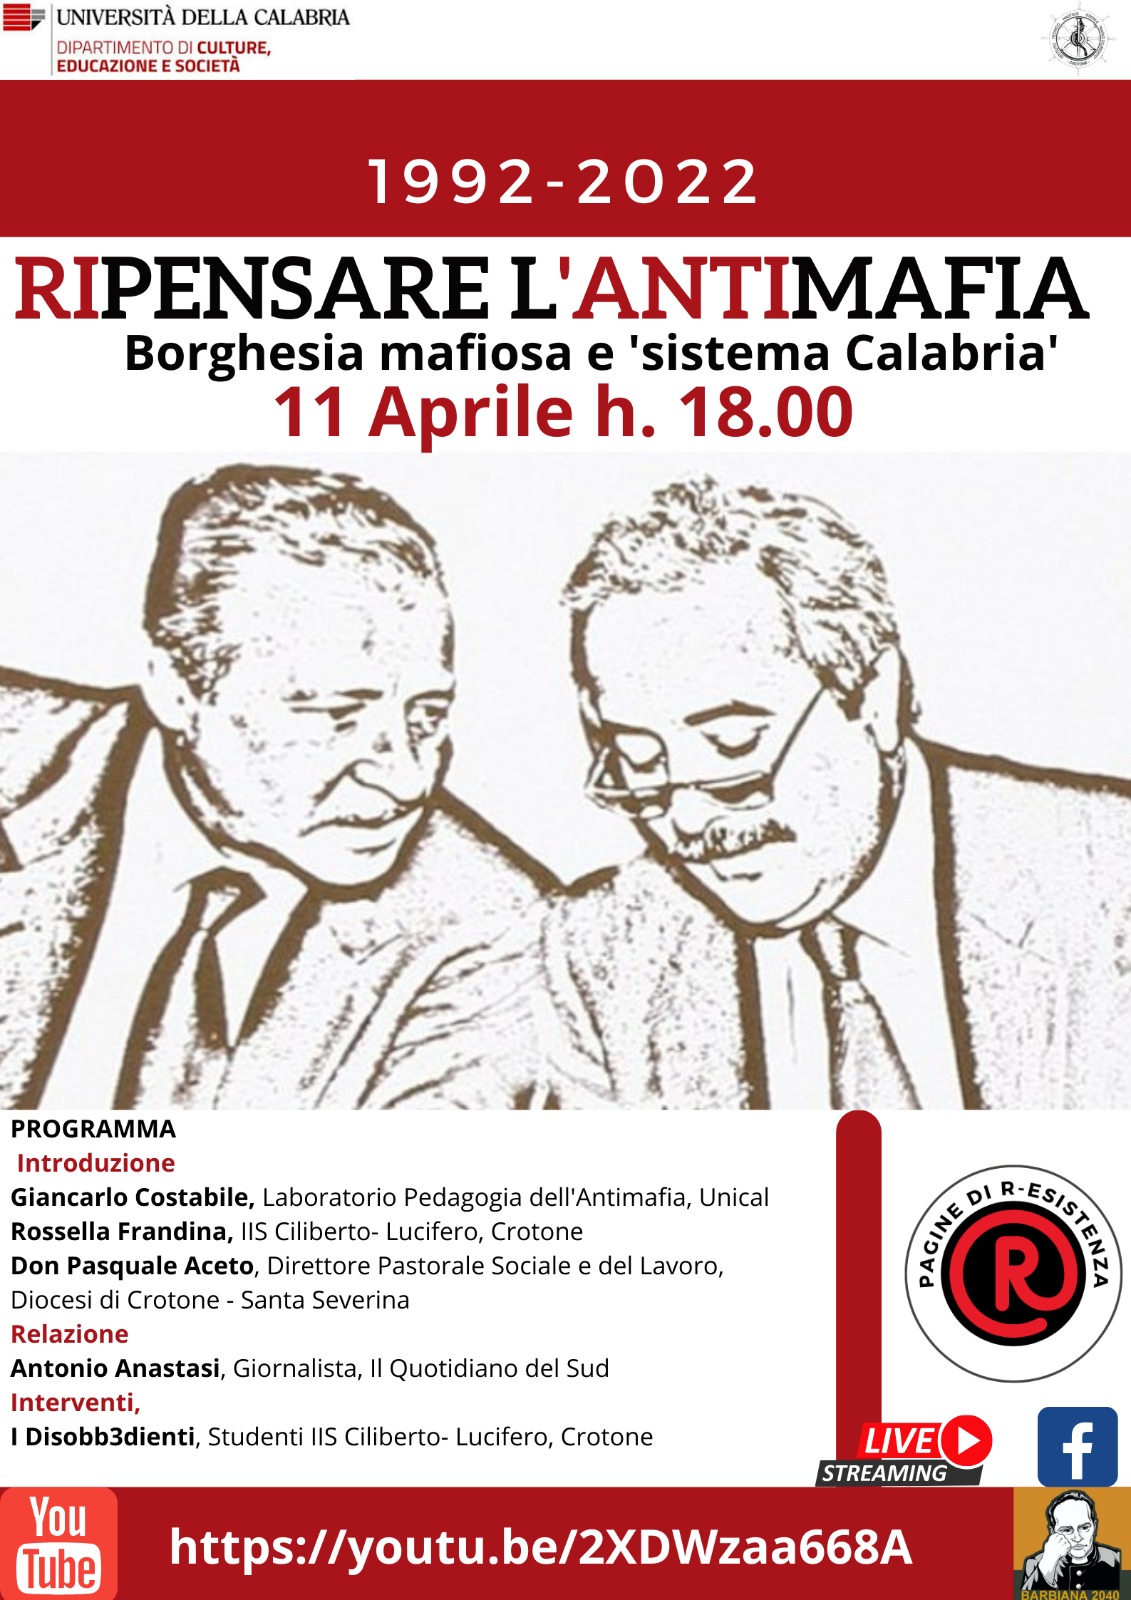 Borghesia mafiosa e sistema Calabria: Nuovo webinar di Pedagogia dell’Antimafia Unical e Istituto Ciliberto di Crotone
  